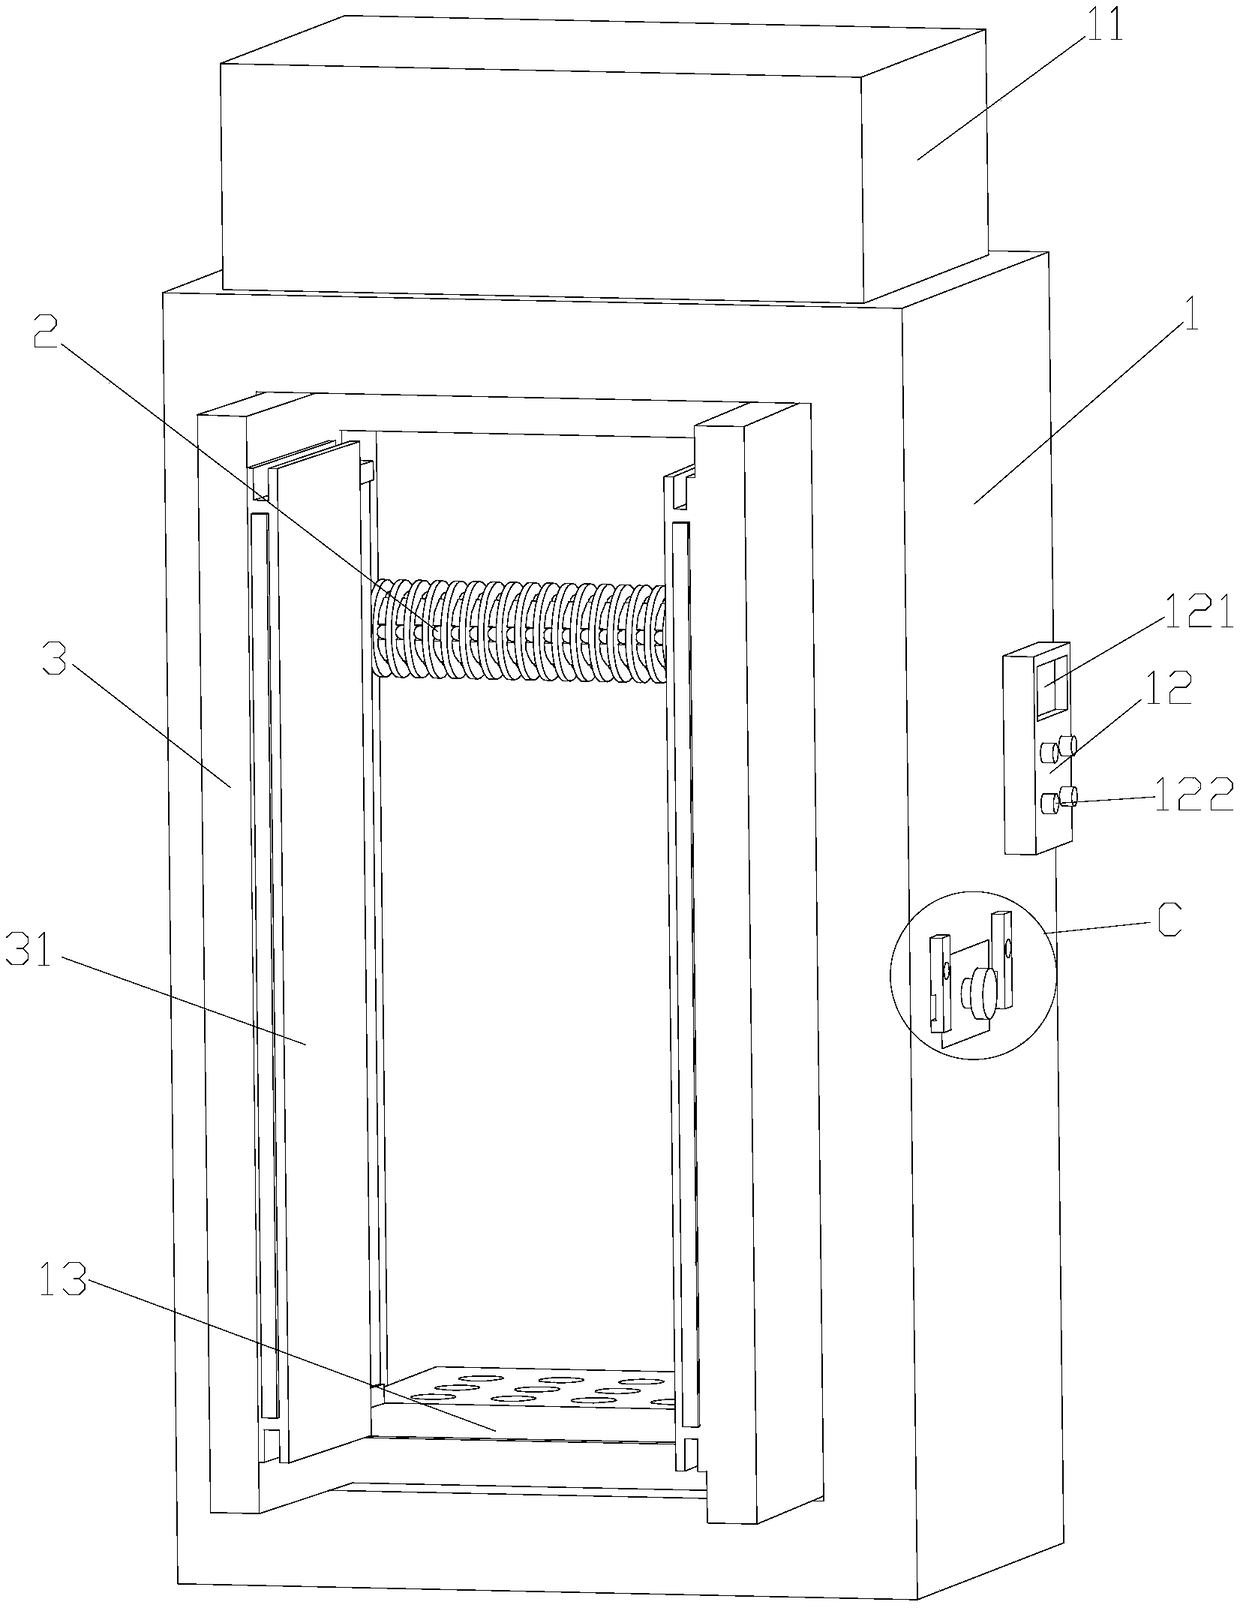 A moisture-proof sterilized closet